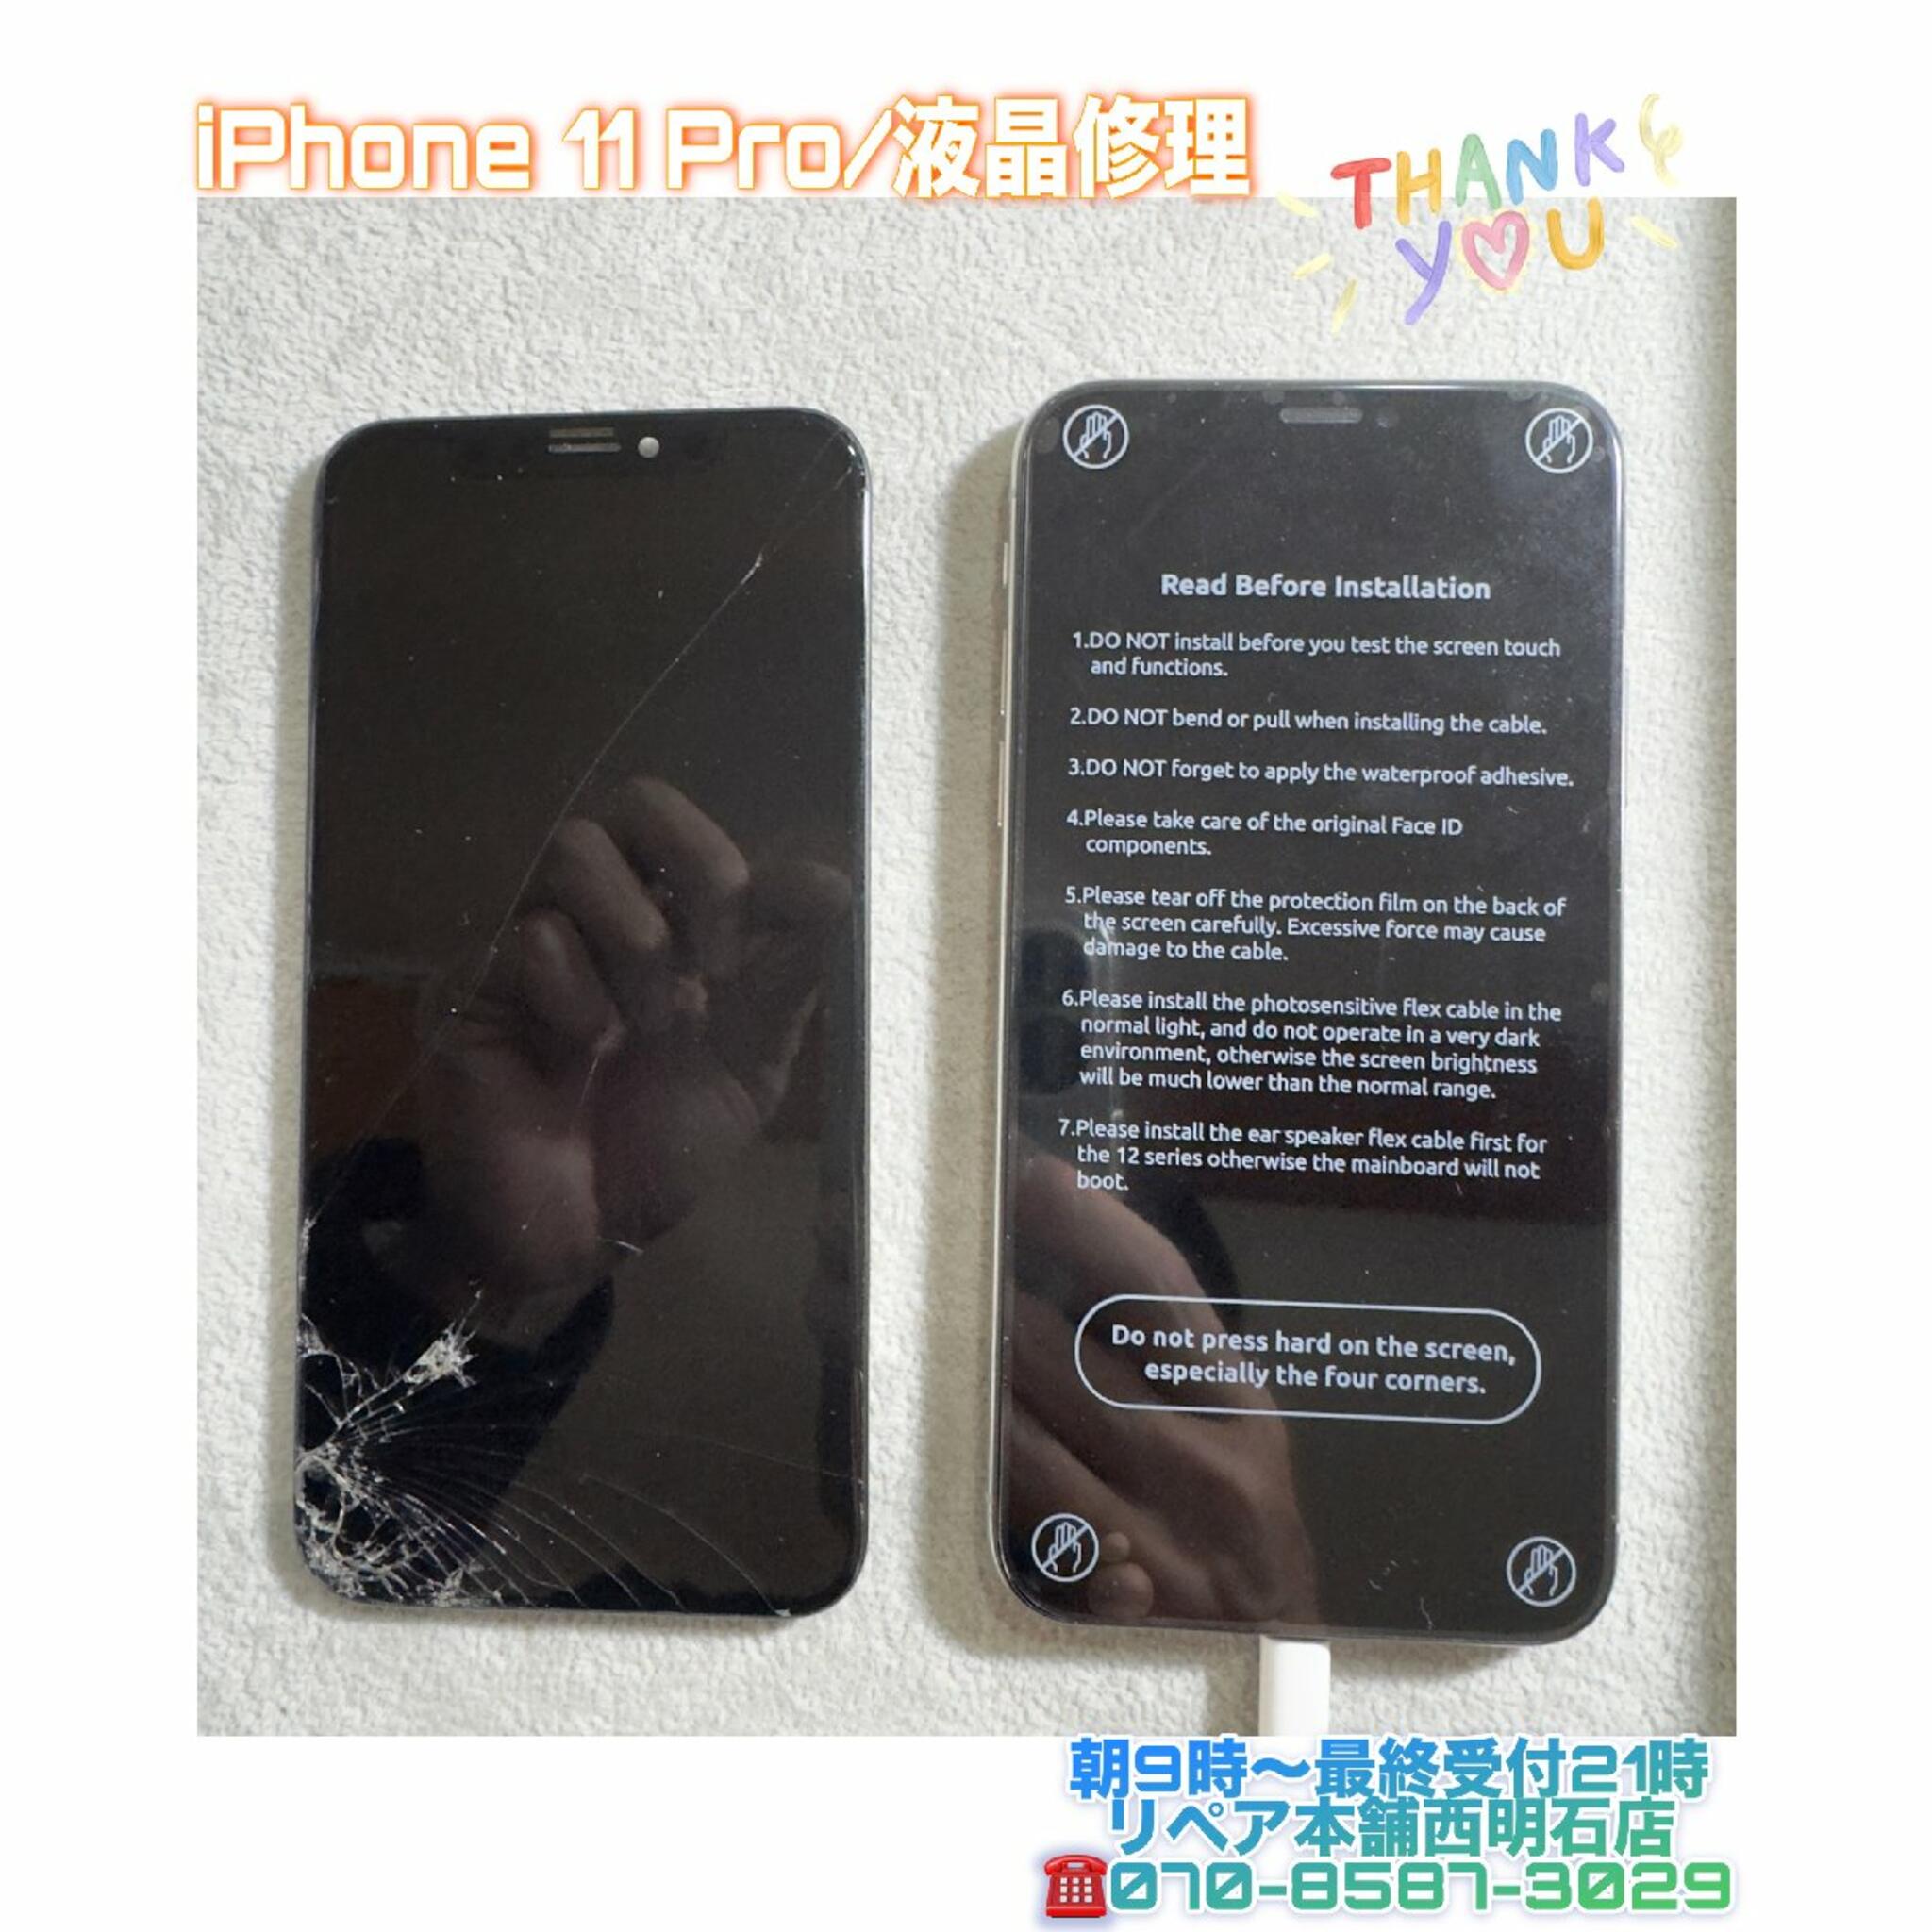 iPhone修理 明石 リペア本舗 西明石店からのお知らせ(💡神戸市西区の方より、iPhone 11 Pro液晶交換のご依頼を頂きました😀)に関する写真